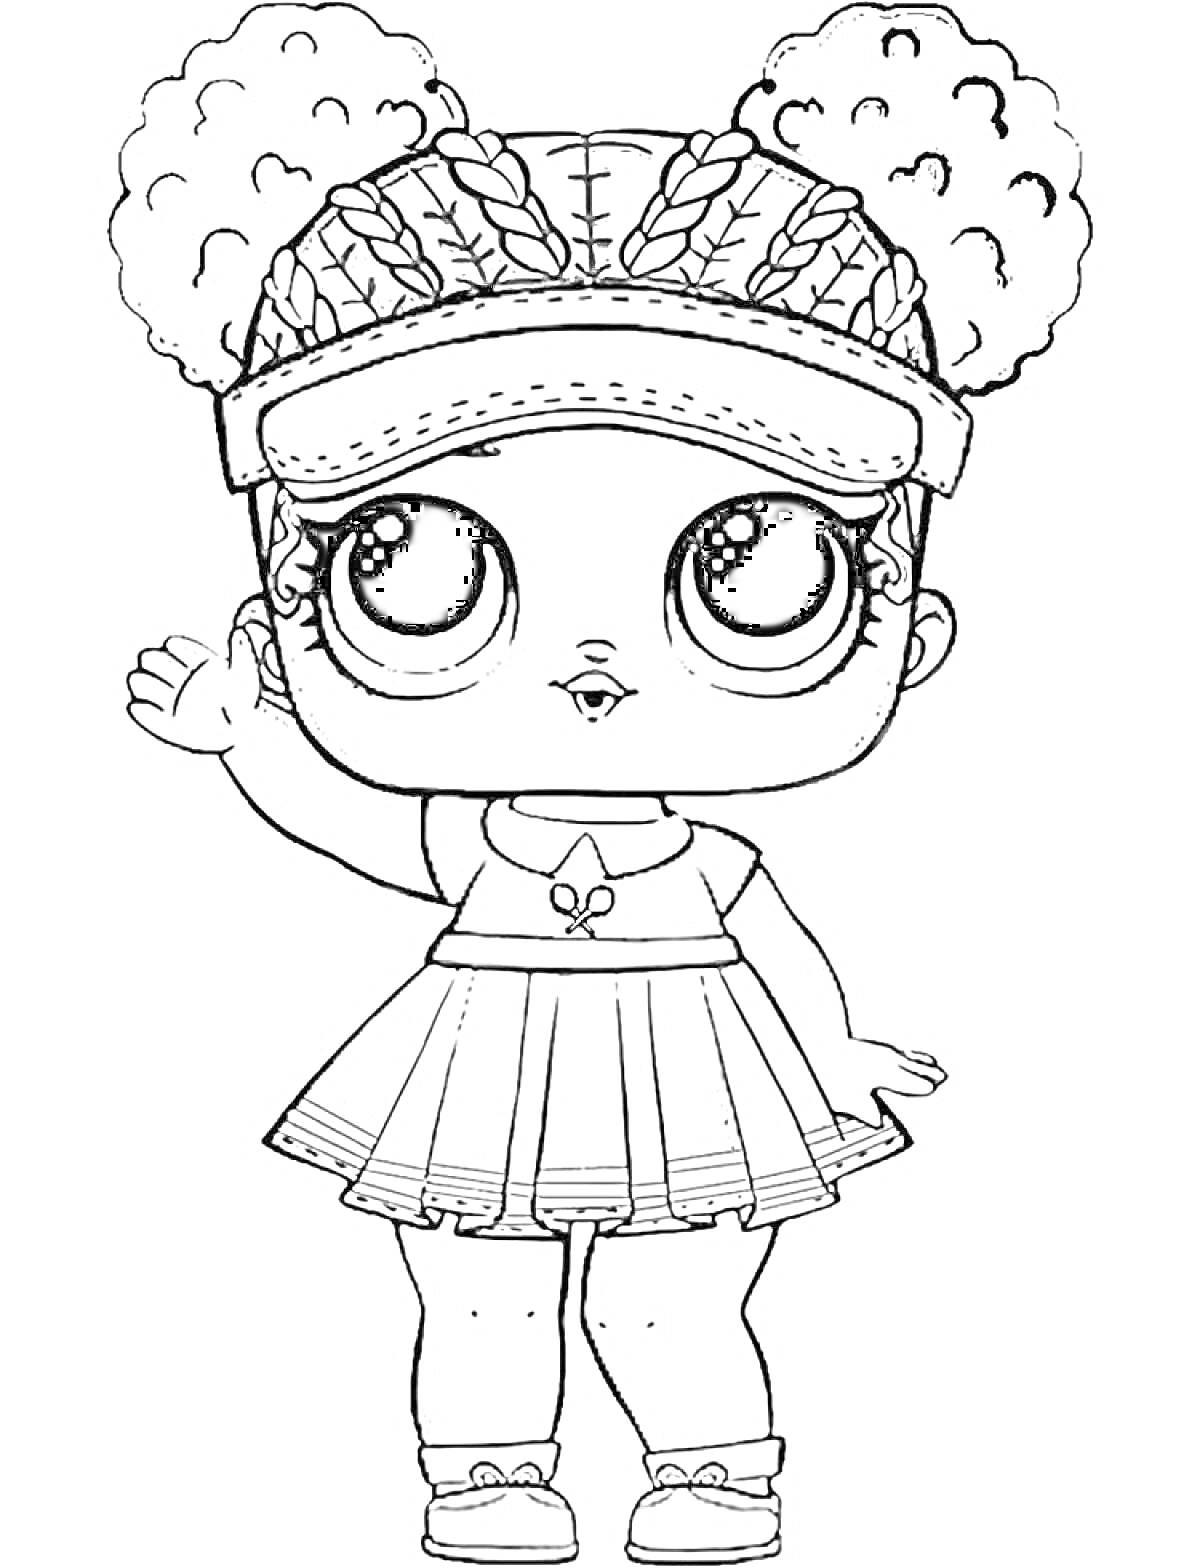 Раскраска Кукла Лол с кудрявыми волосами, в бейсболке, коротком платье и туфельках, машущая рукой